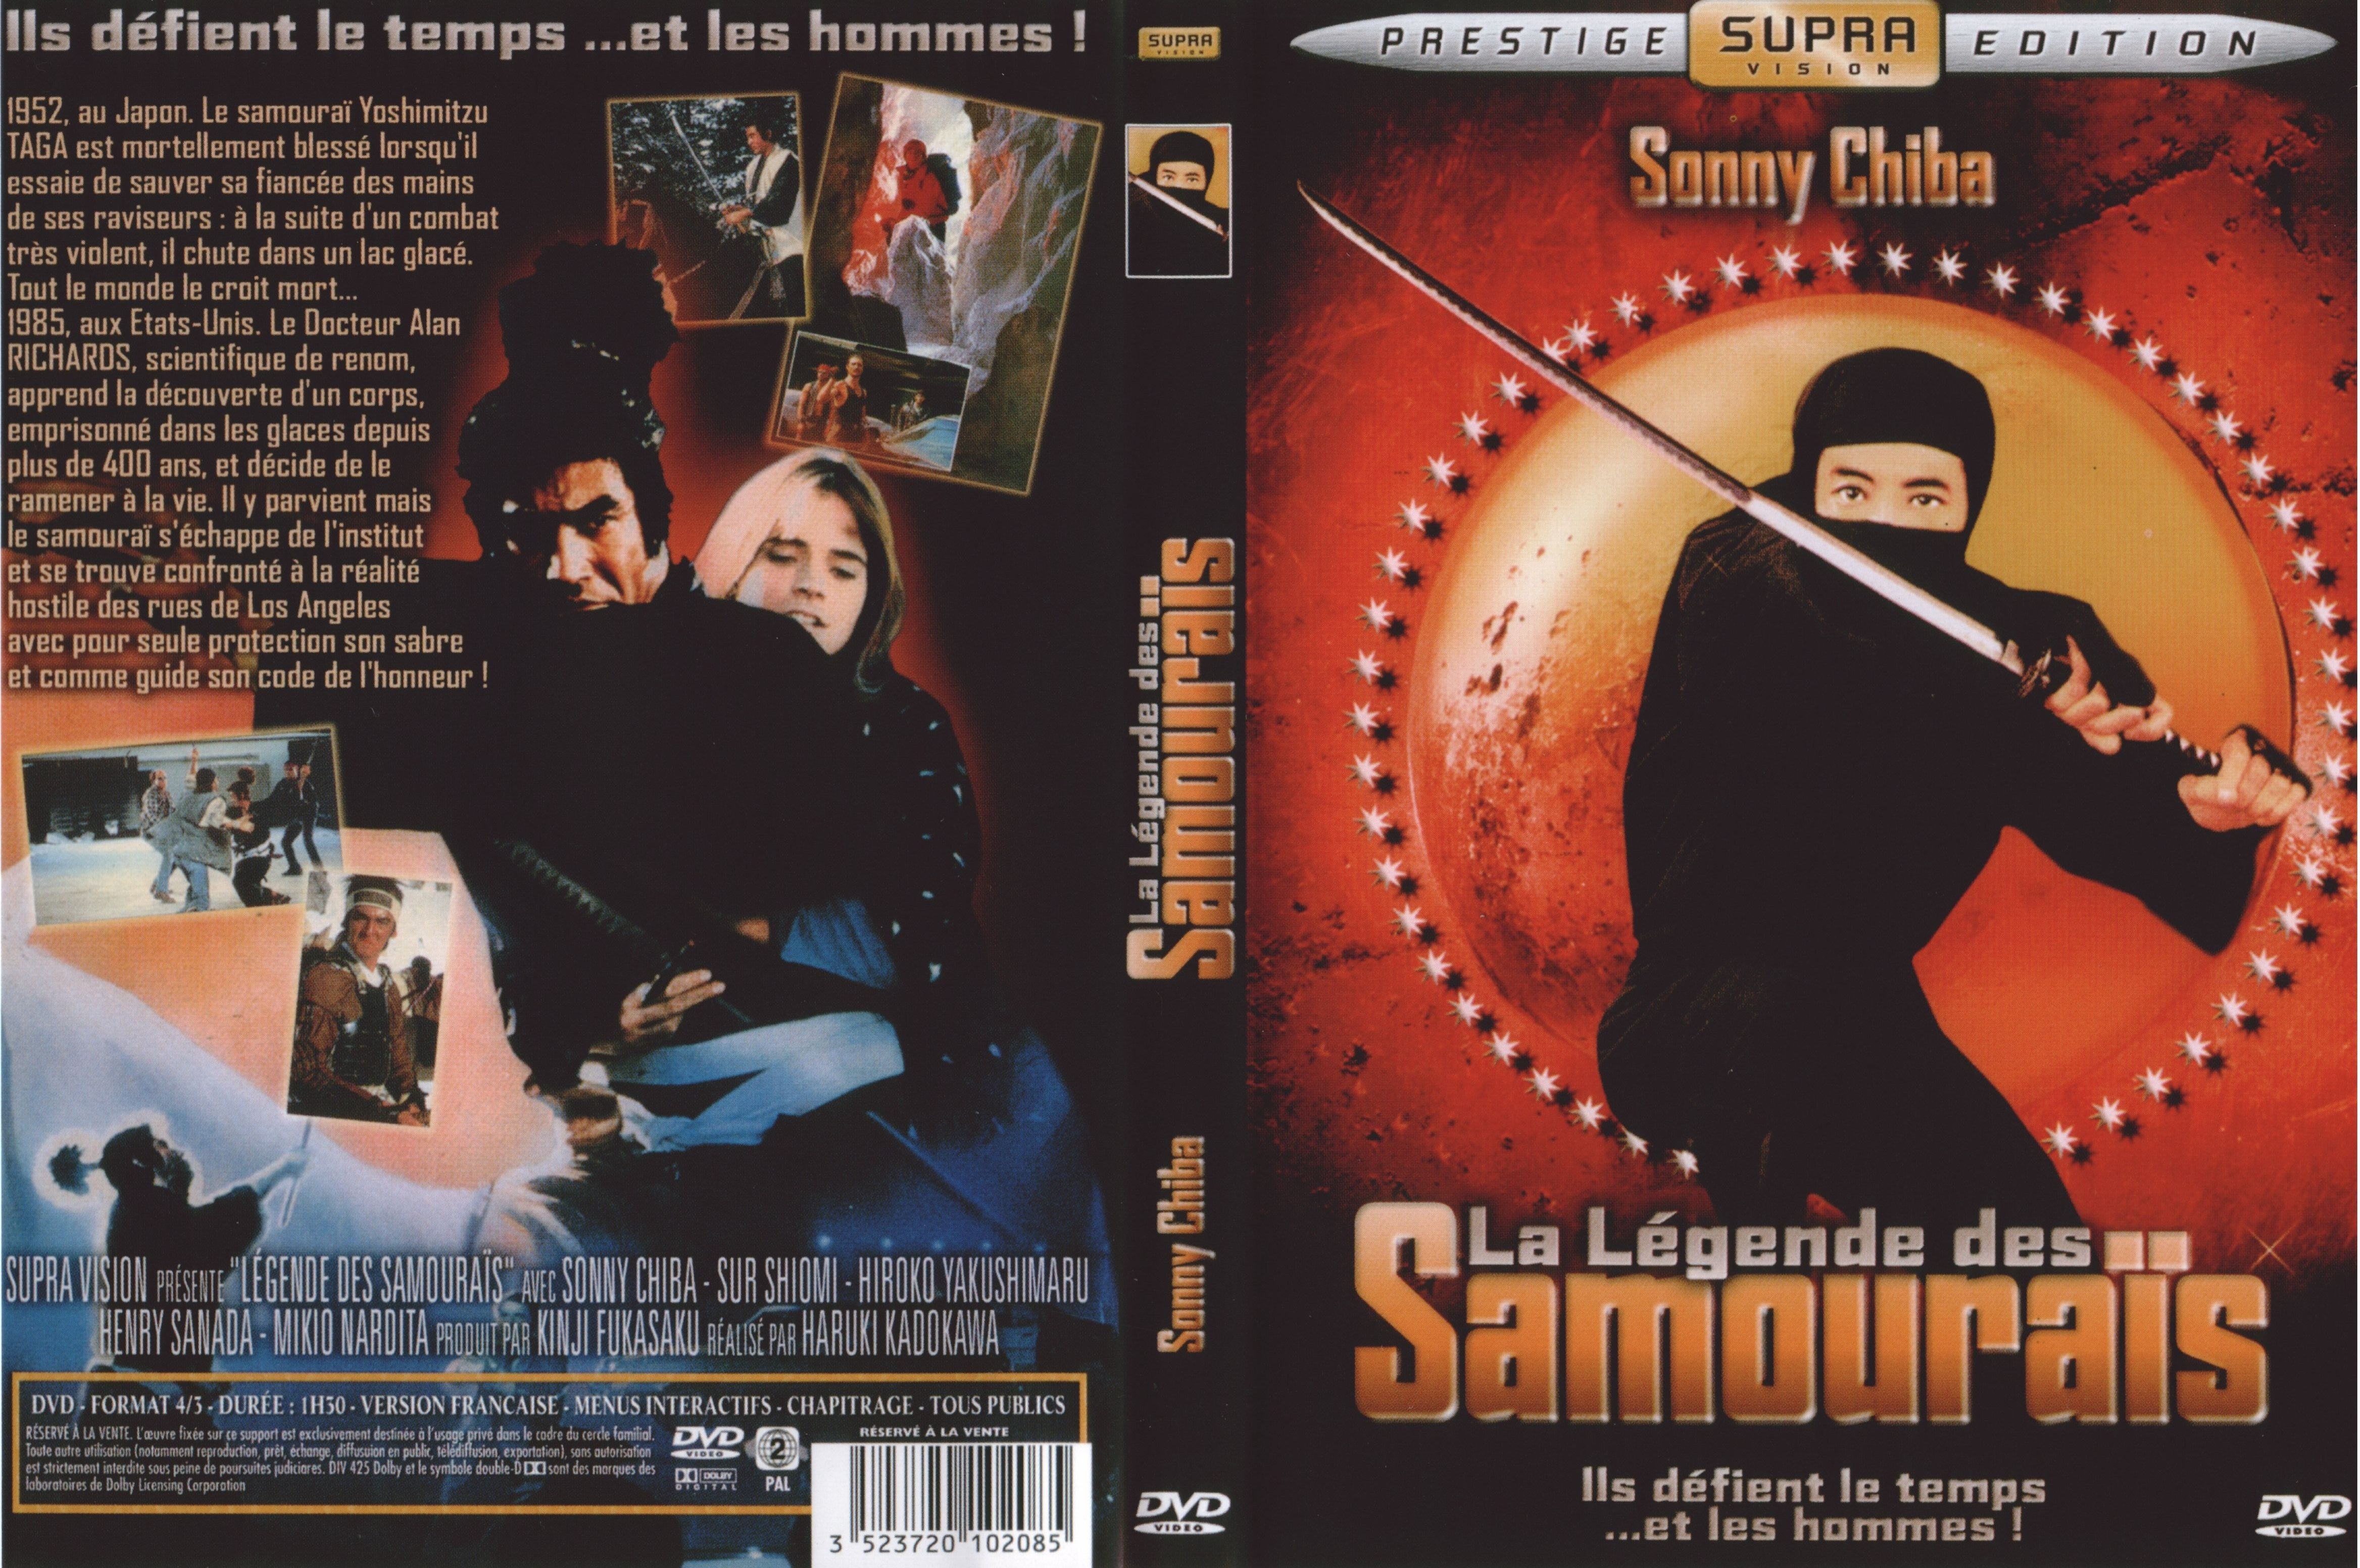 Jaquette DVD La legende des samourais